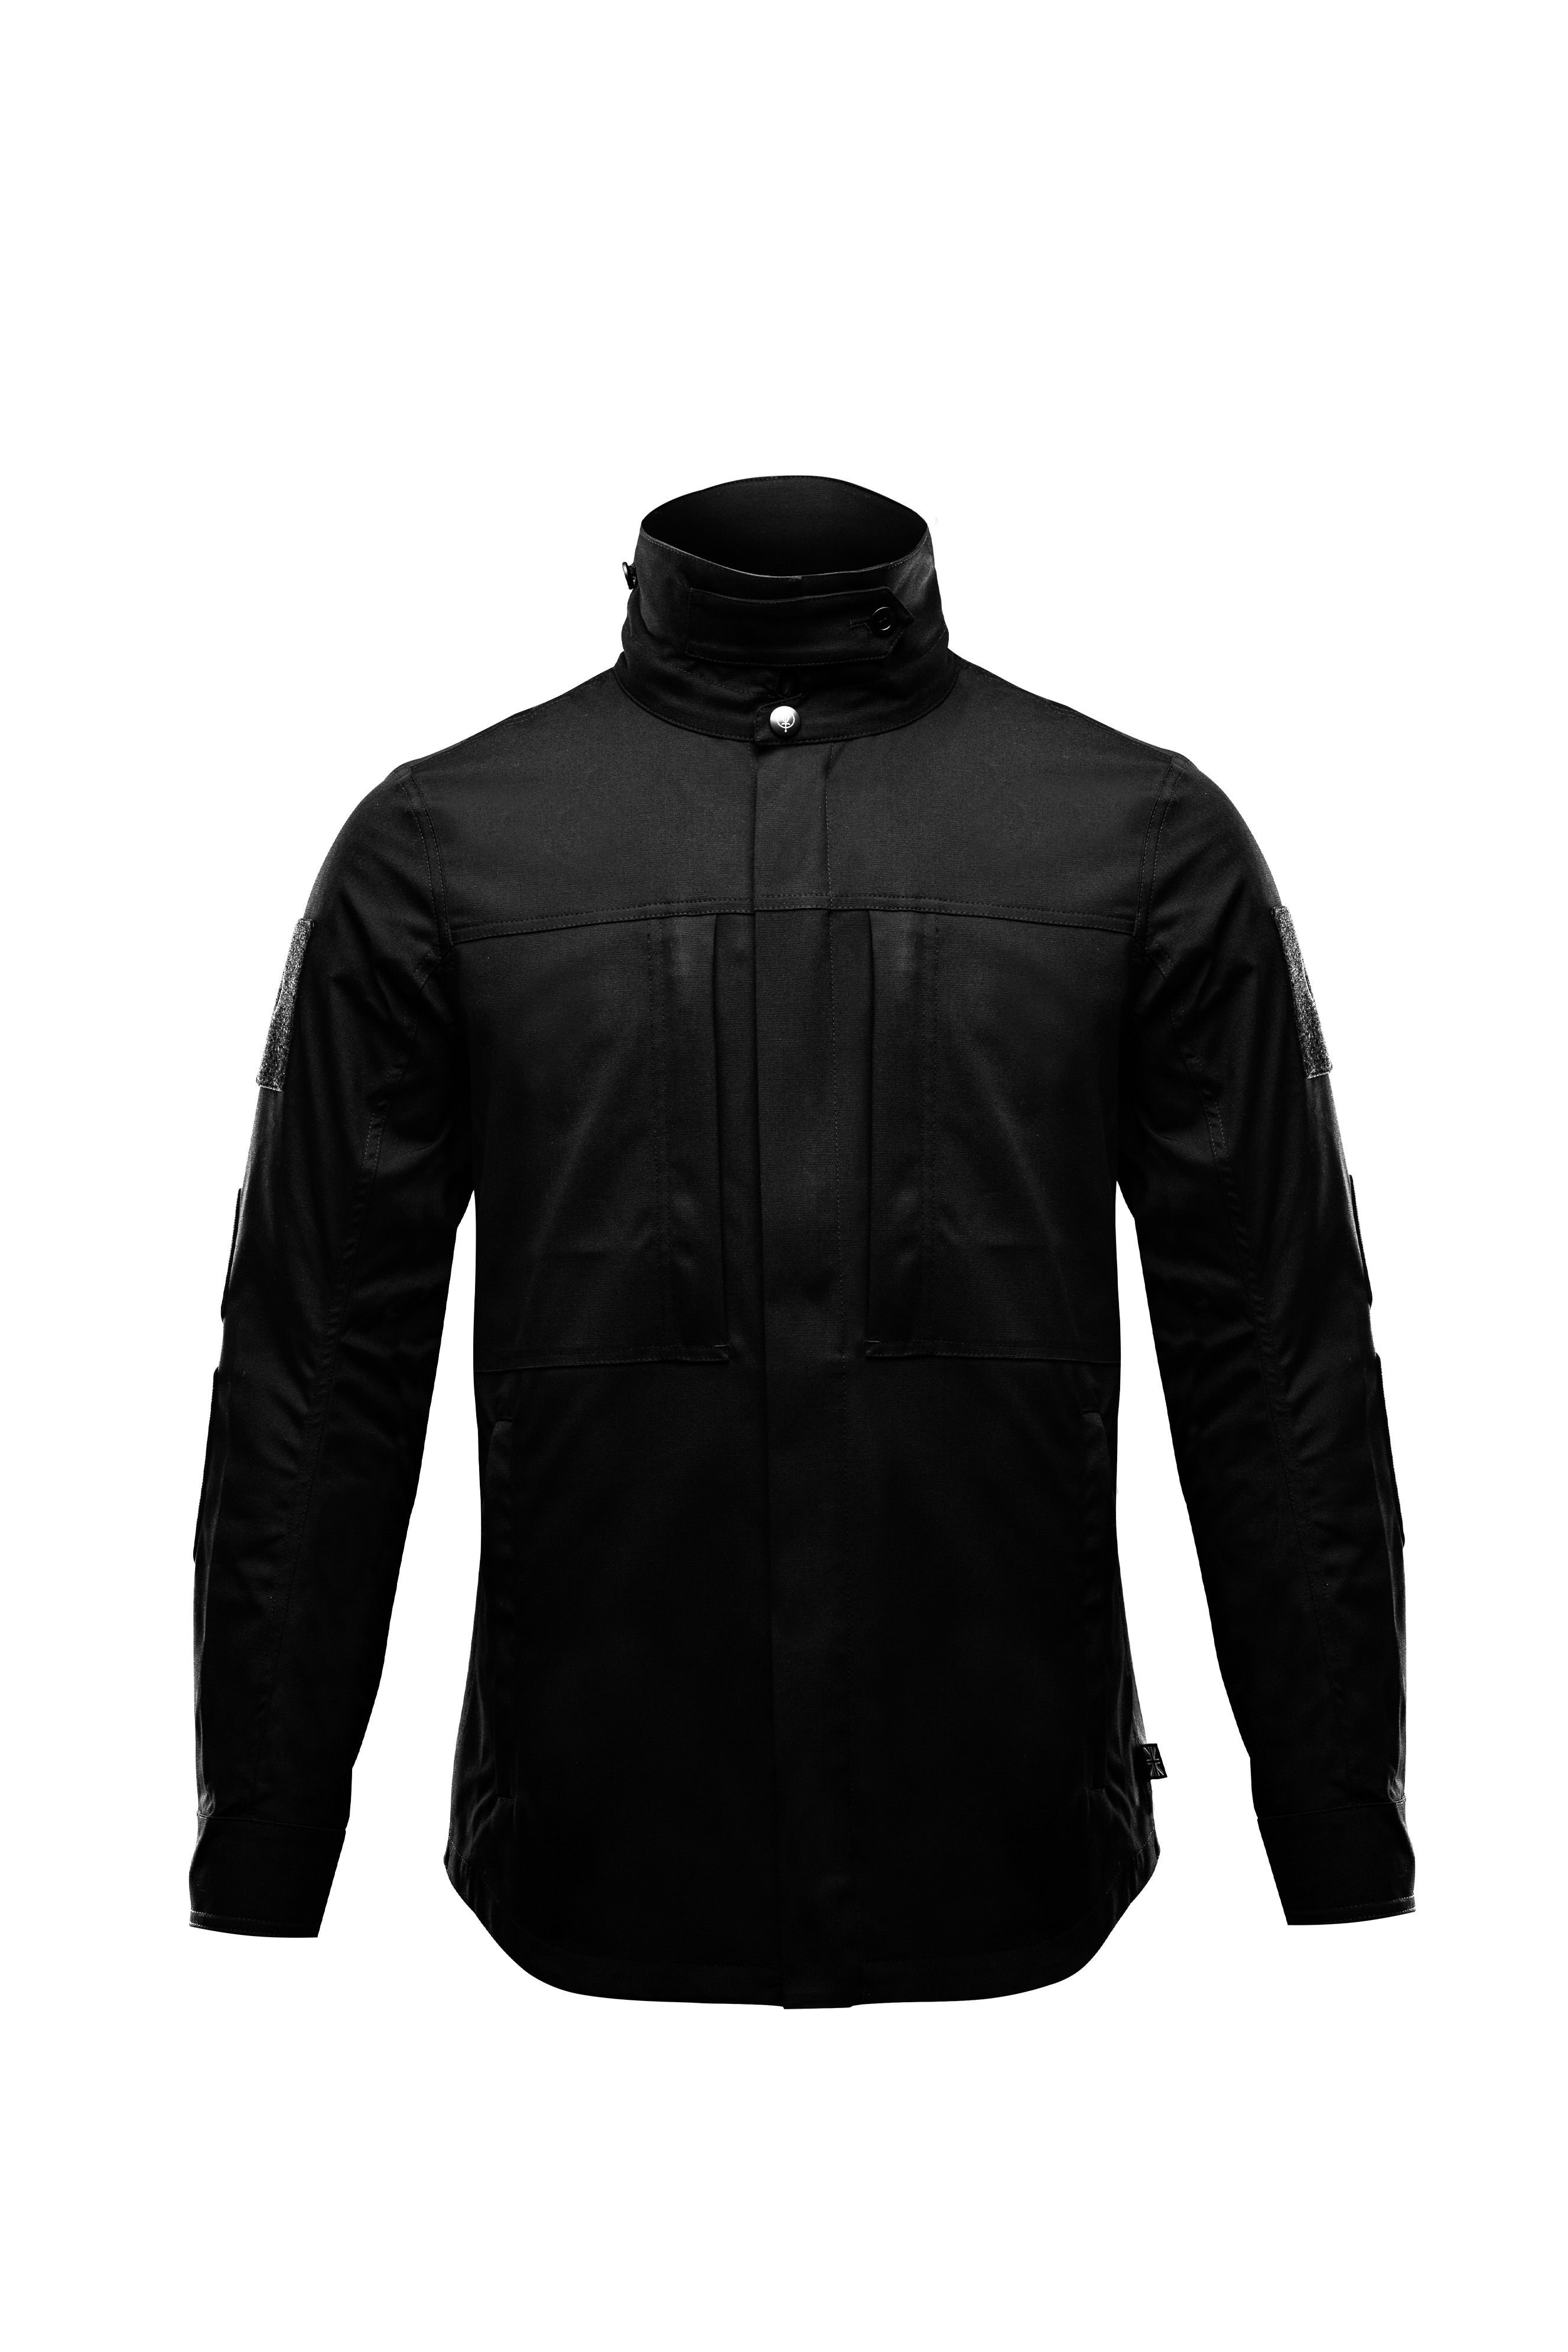 Hybrid Jacket  Mens Hybrid Jacket  Combat Shirt For HikingandWalk Xl